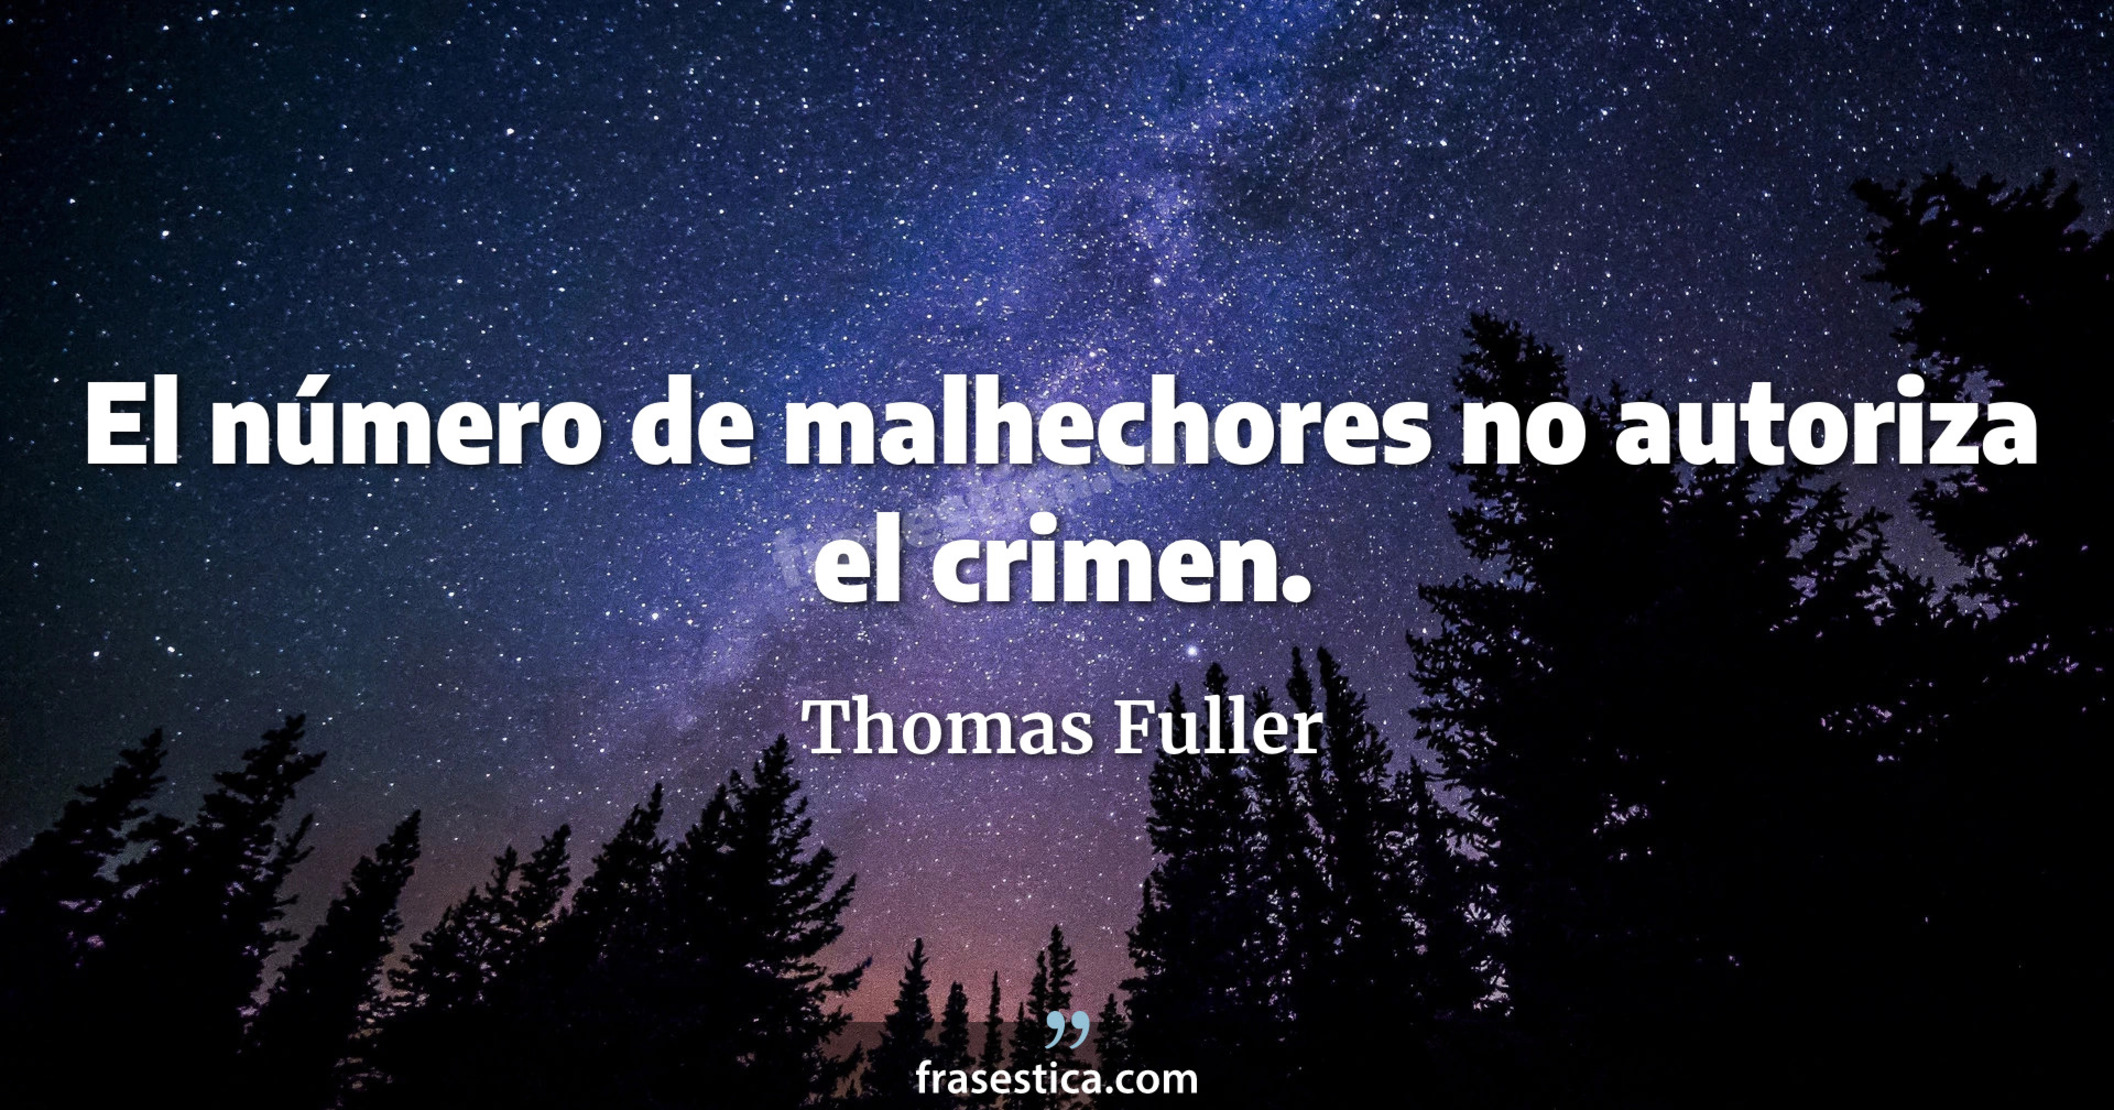 El número de malhechores no autoriza el crimen. - Thomas Fuller